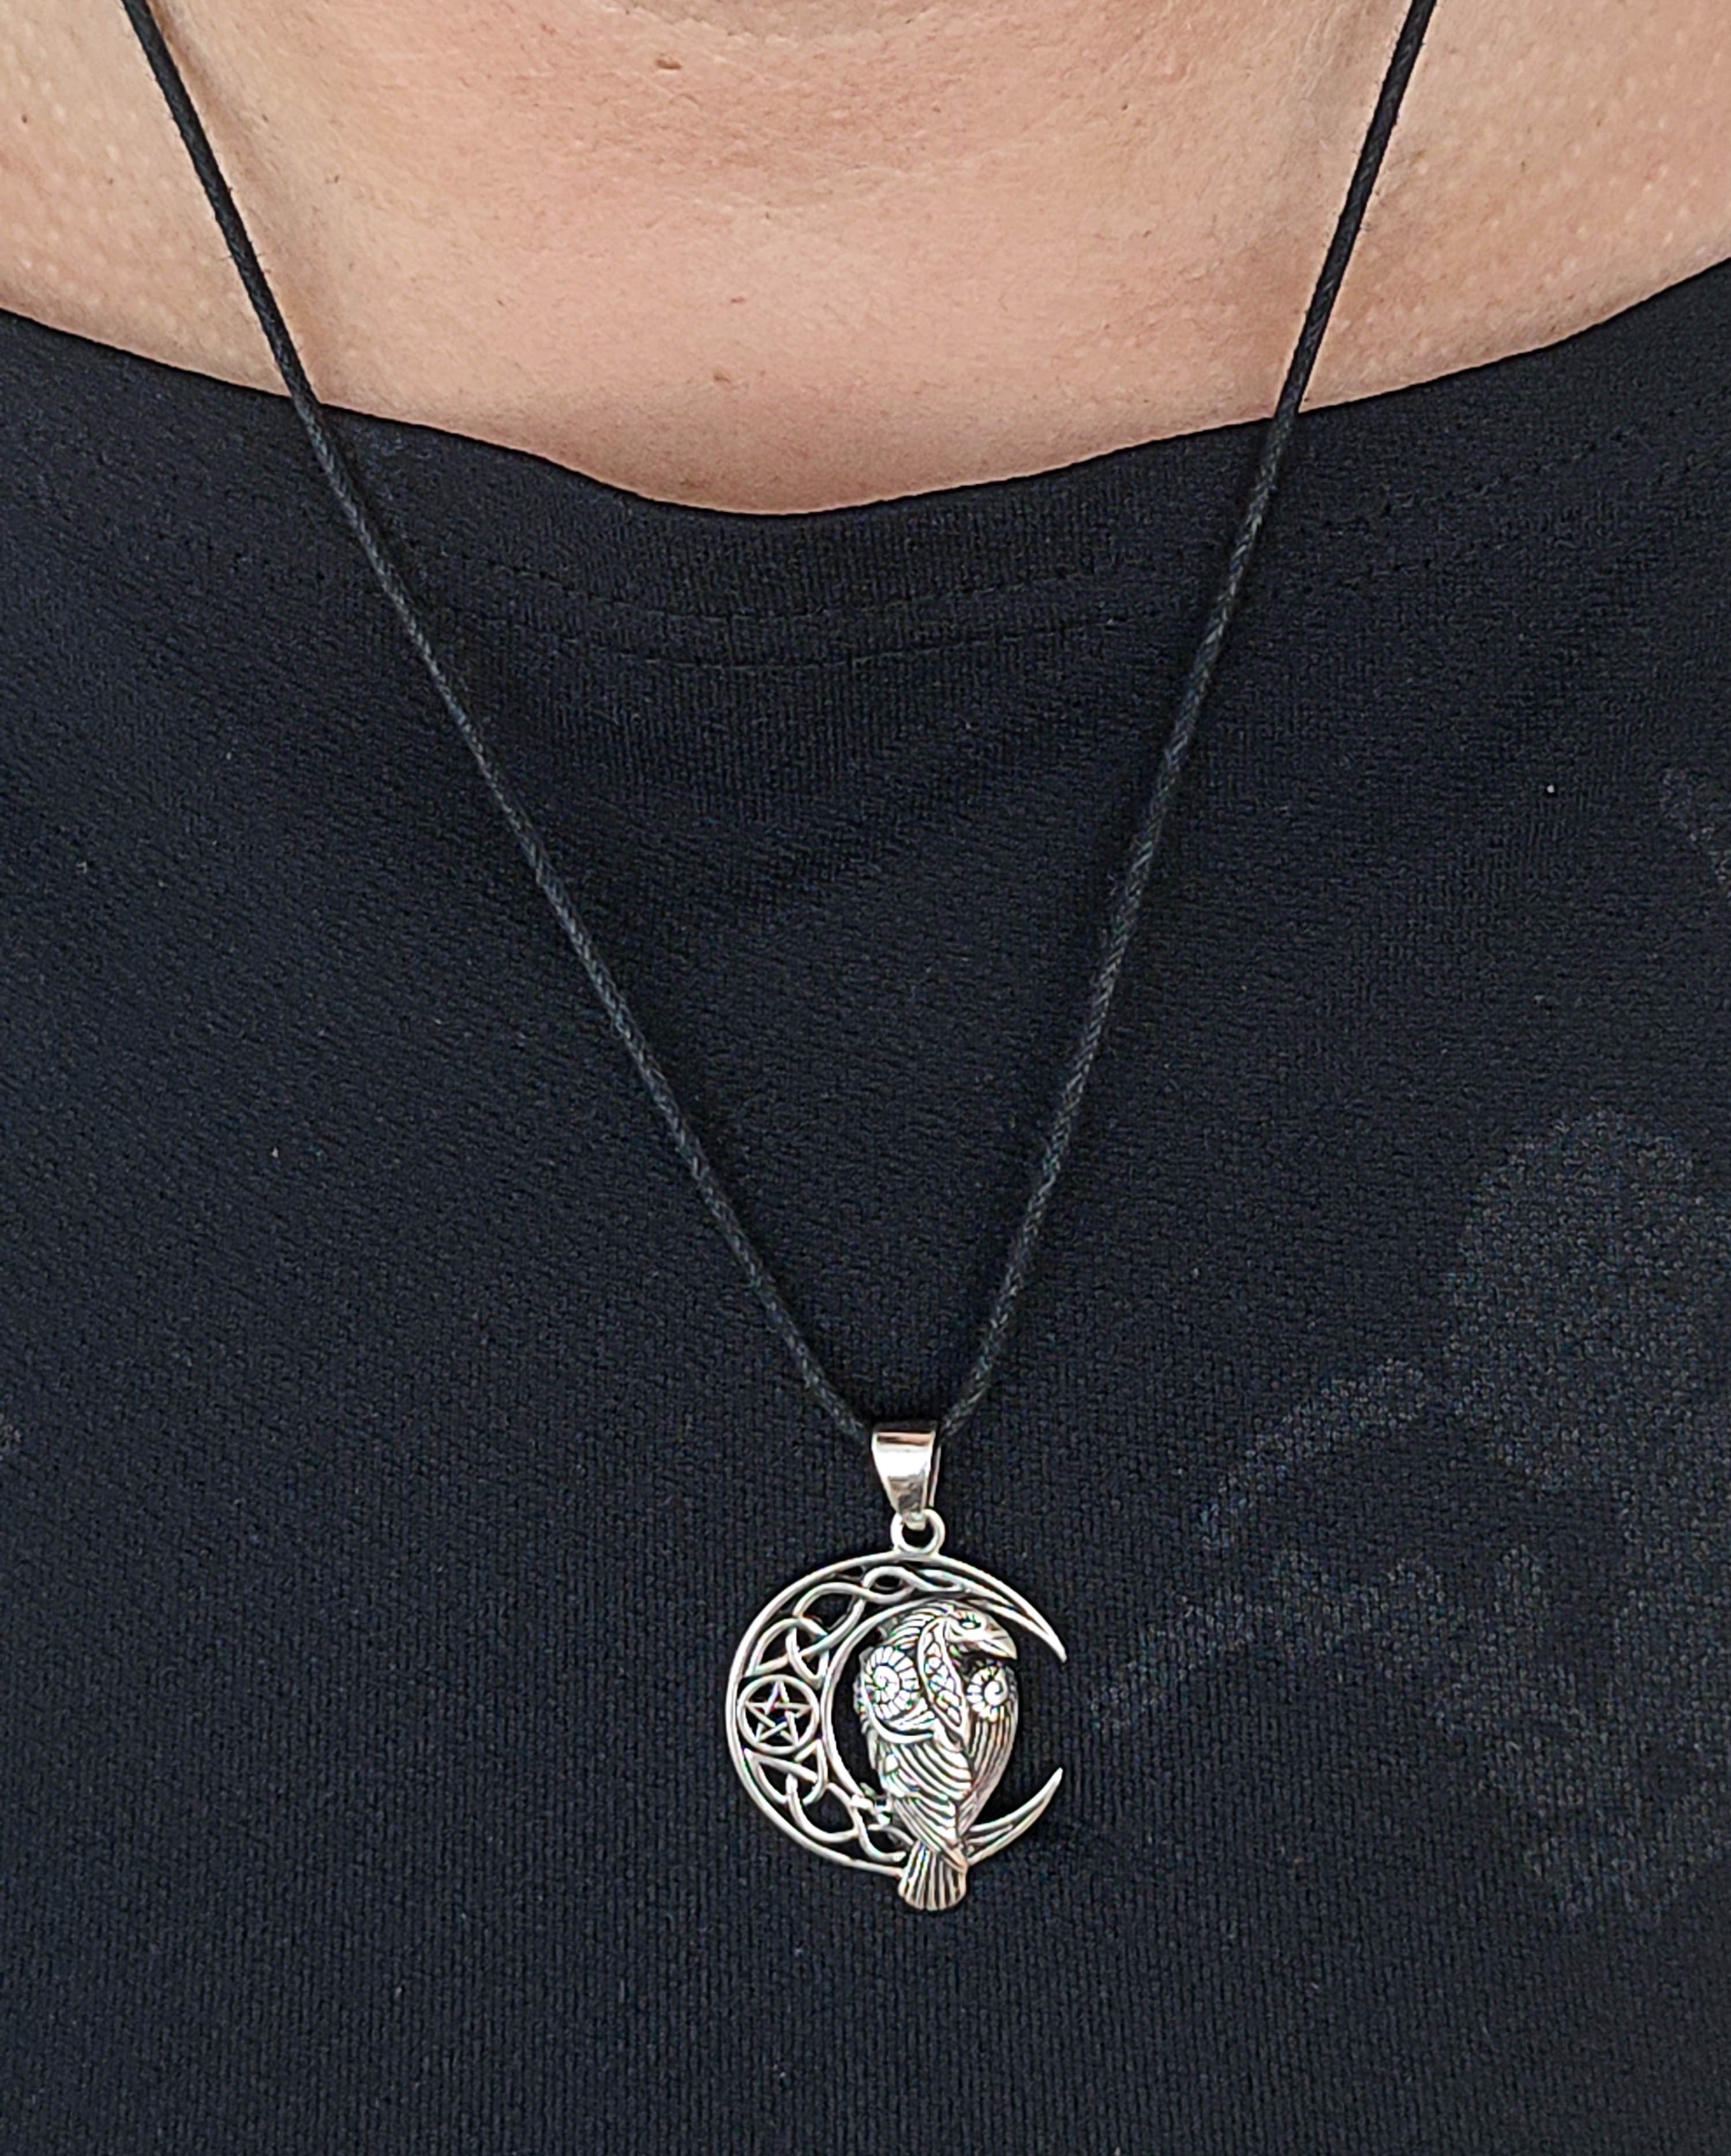 Kiss Kettenanhänger Silber Mond Mondsichel Keltenknoten of 925 Sterling im Leather Rabe Pentagramm